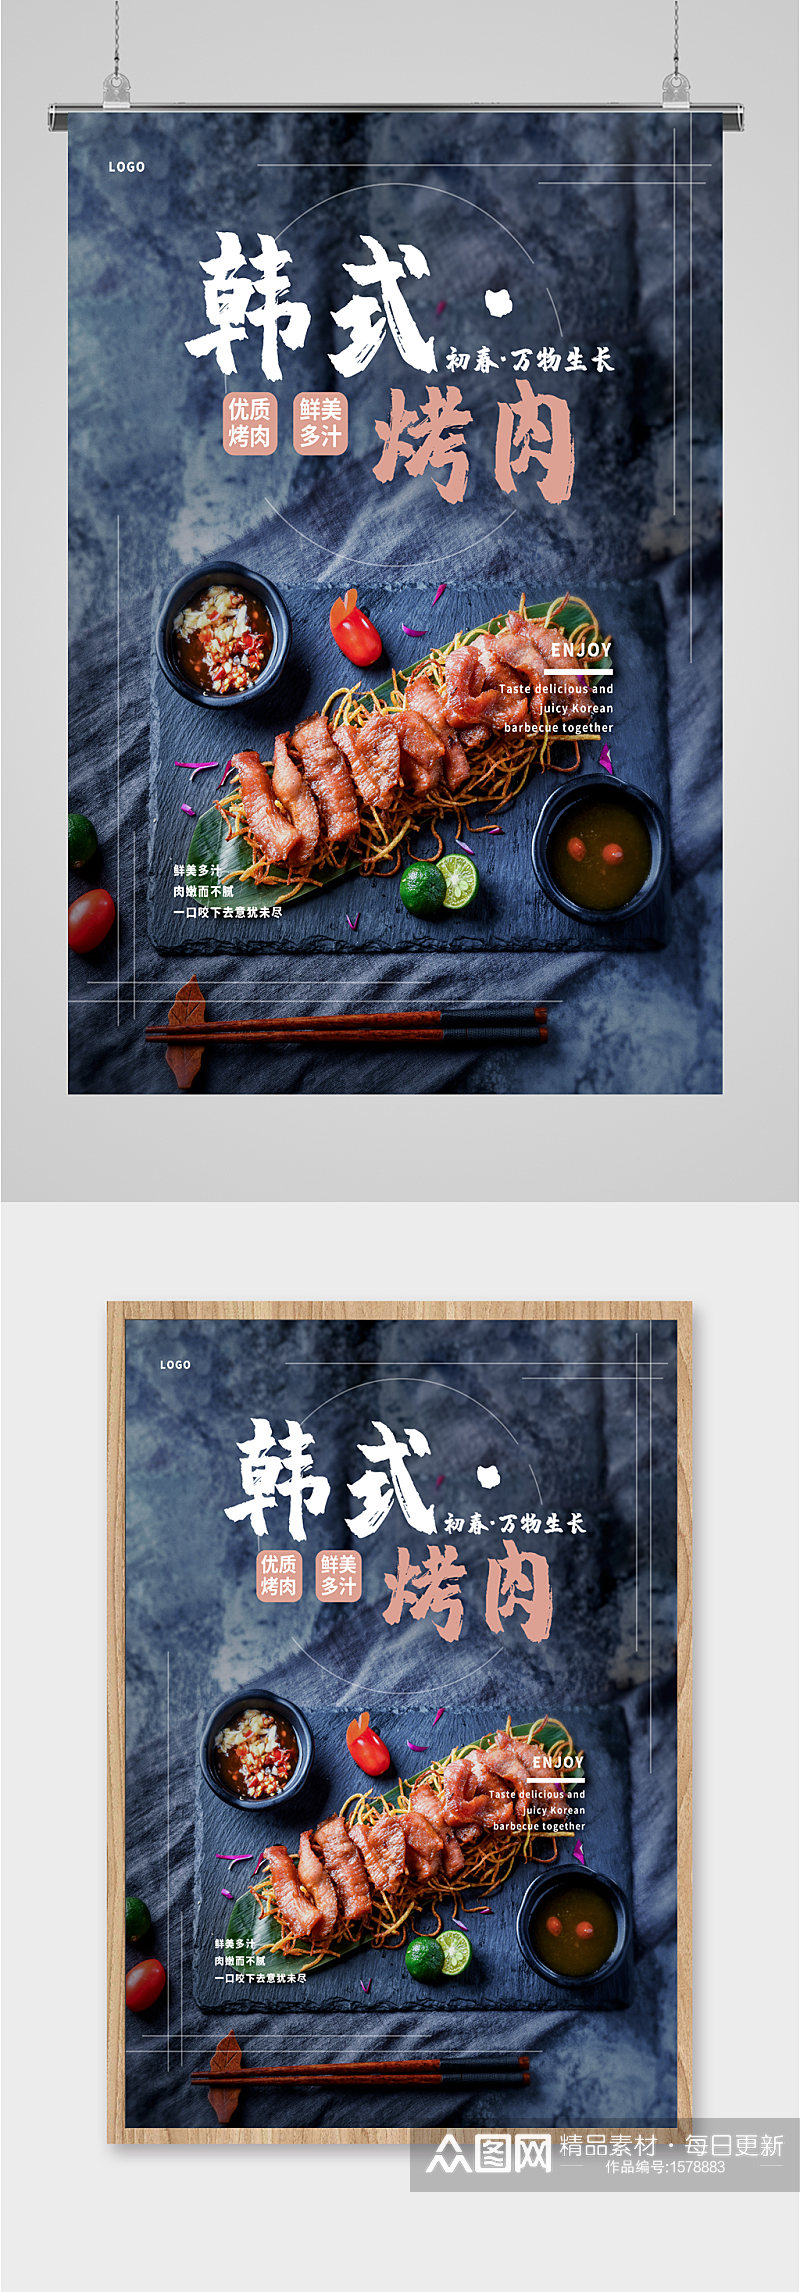 韩式特色烤肉美食海报素材